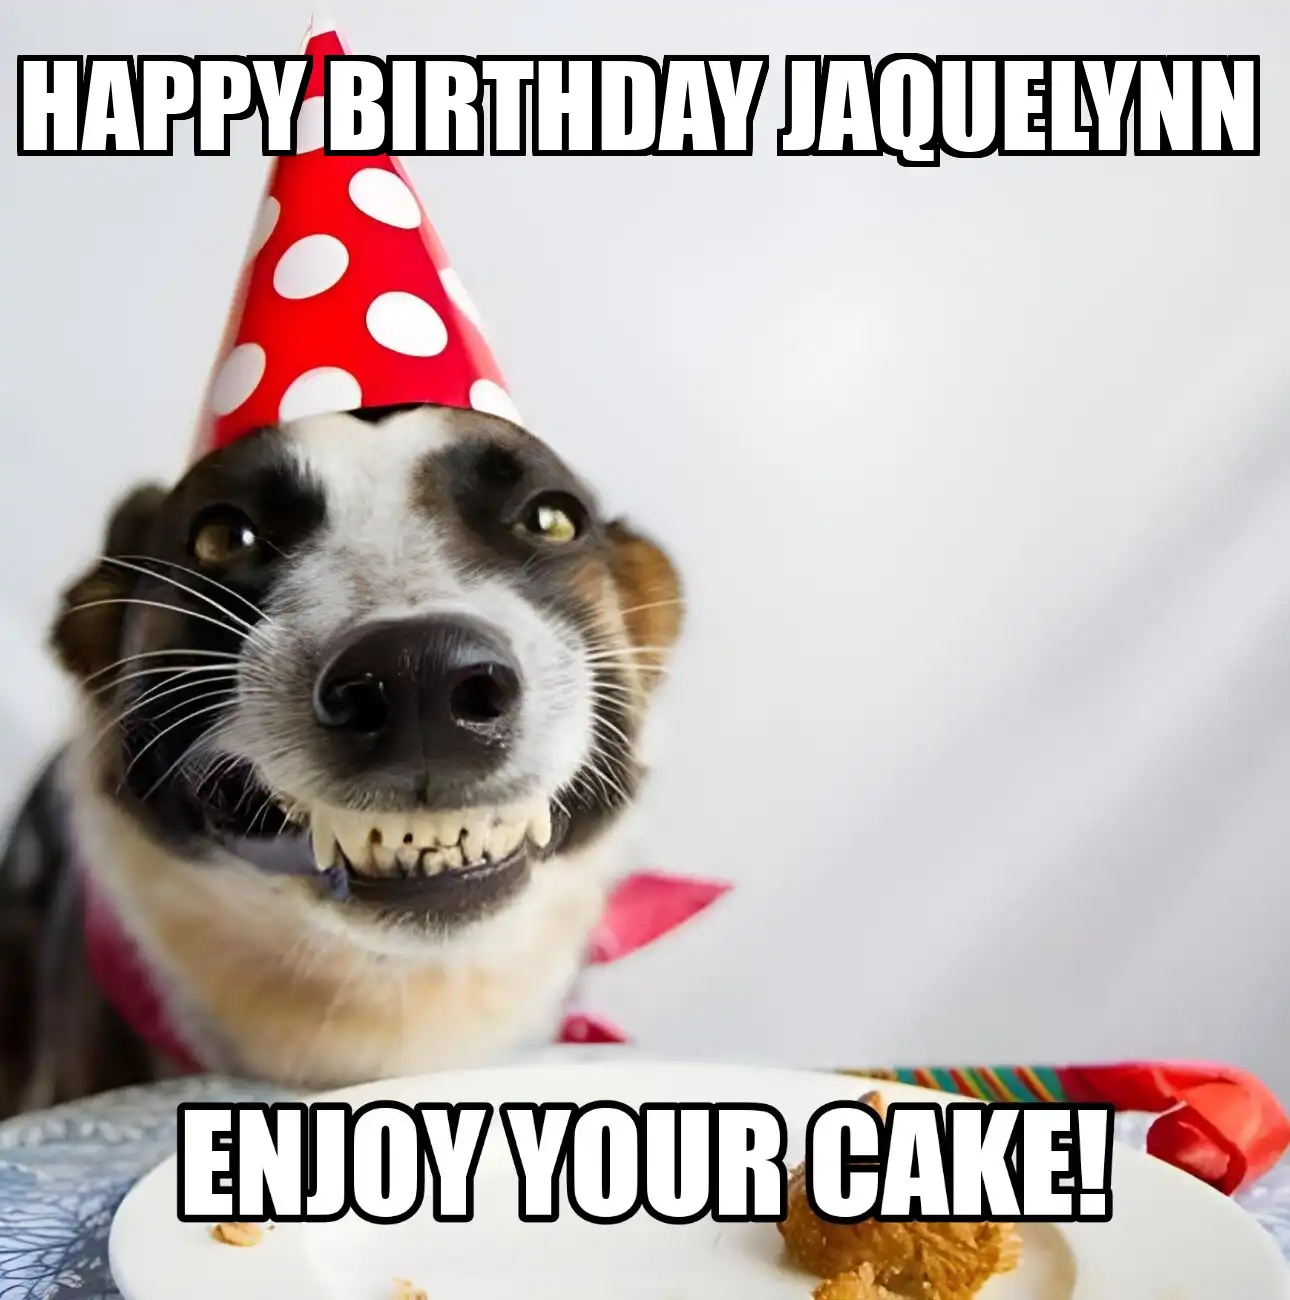 Happy Birthday Jaquelynn Enjoy Your Cake Dog Meme